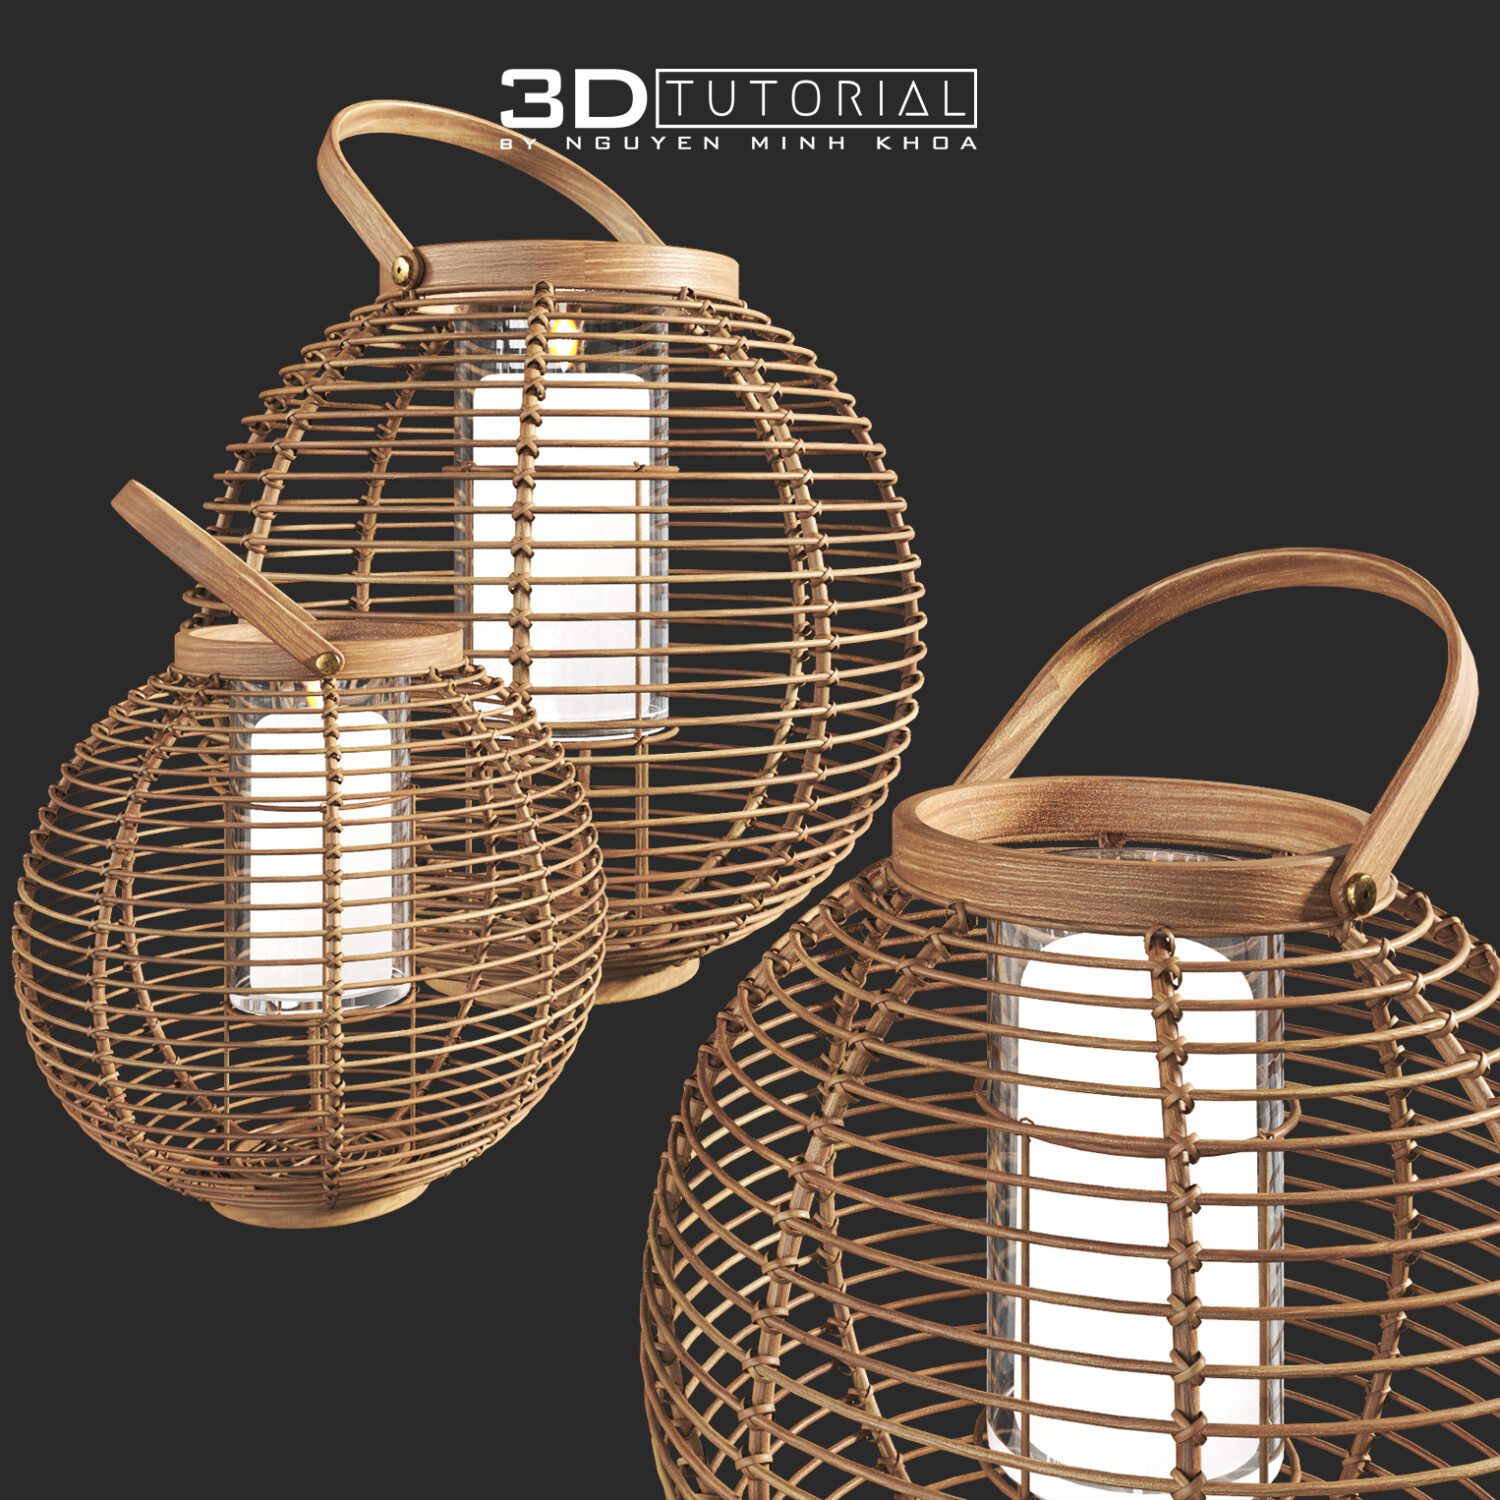 Free 3D Model Tortola Lantern Small By Nguyen Minh Khoa